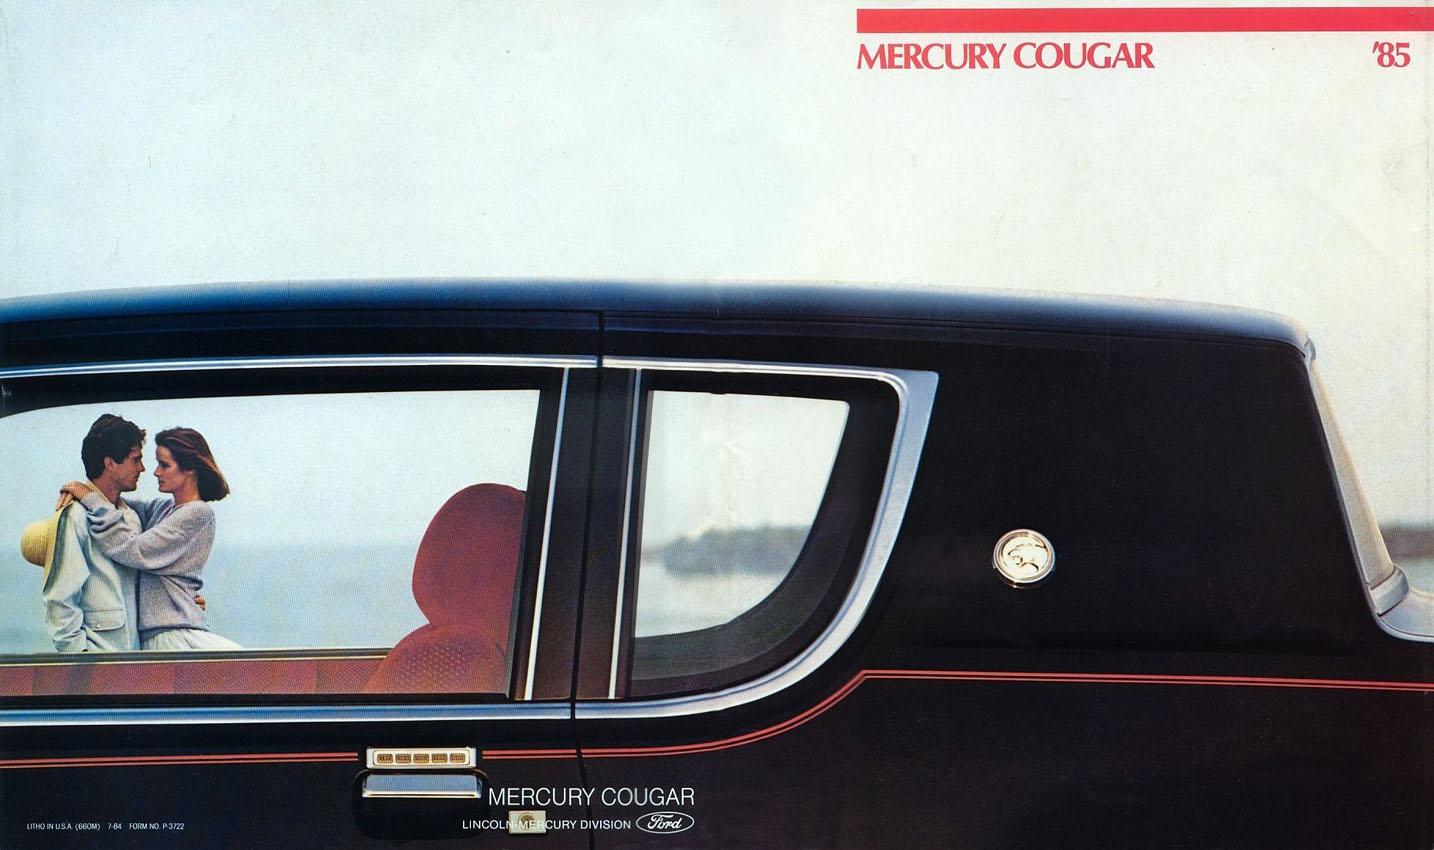 1985 Mercury Cougar Brochure Page 3